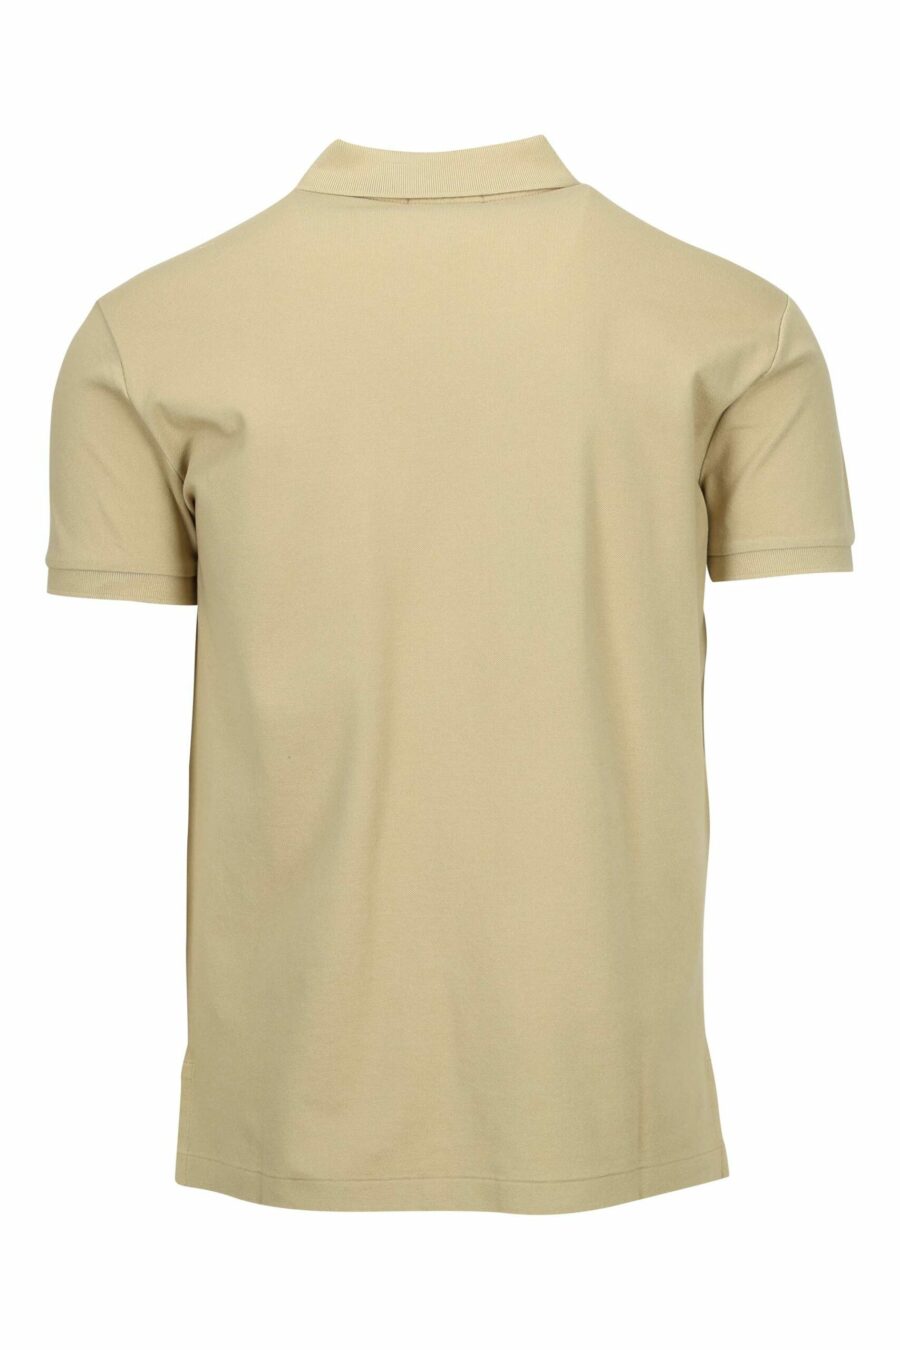 Beige polo shirt with white mini-logo "polo" - 3616535912021 1 scaled